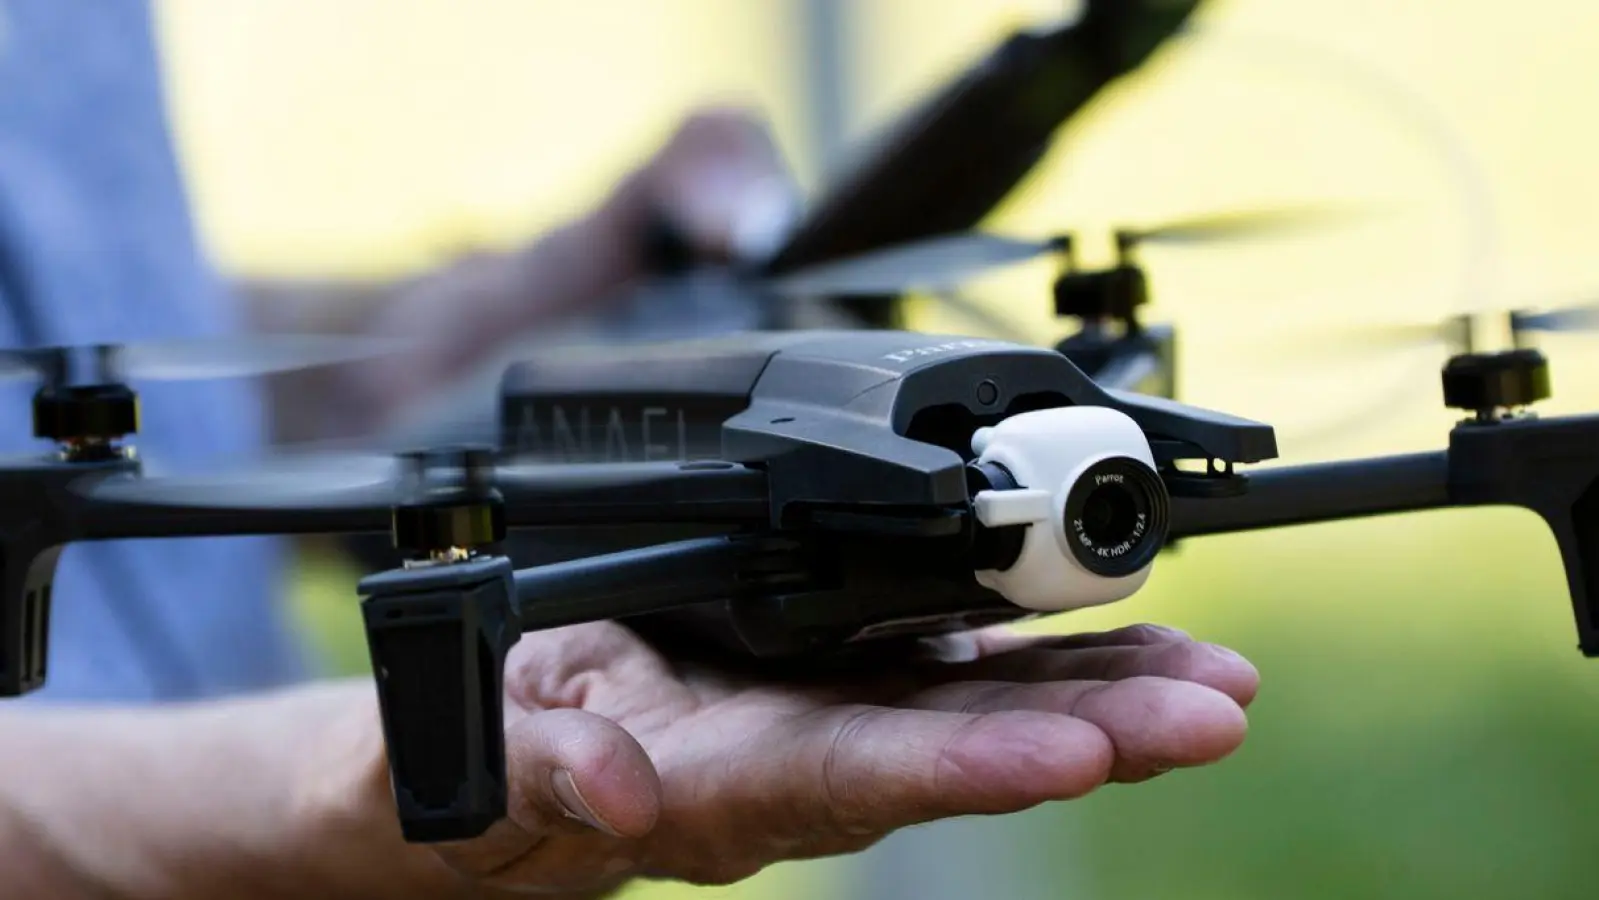 Der Betrieb von Drohnen unterliegt strengen Vorschriften - Flugverbotszonen und zulässige Flughöhen sollten daher mindestens bekannt sein. (Foto: Alexander Prautzsch/dpa-tmn)